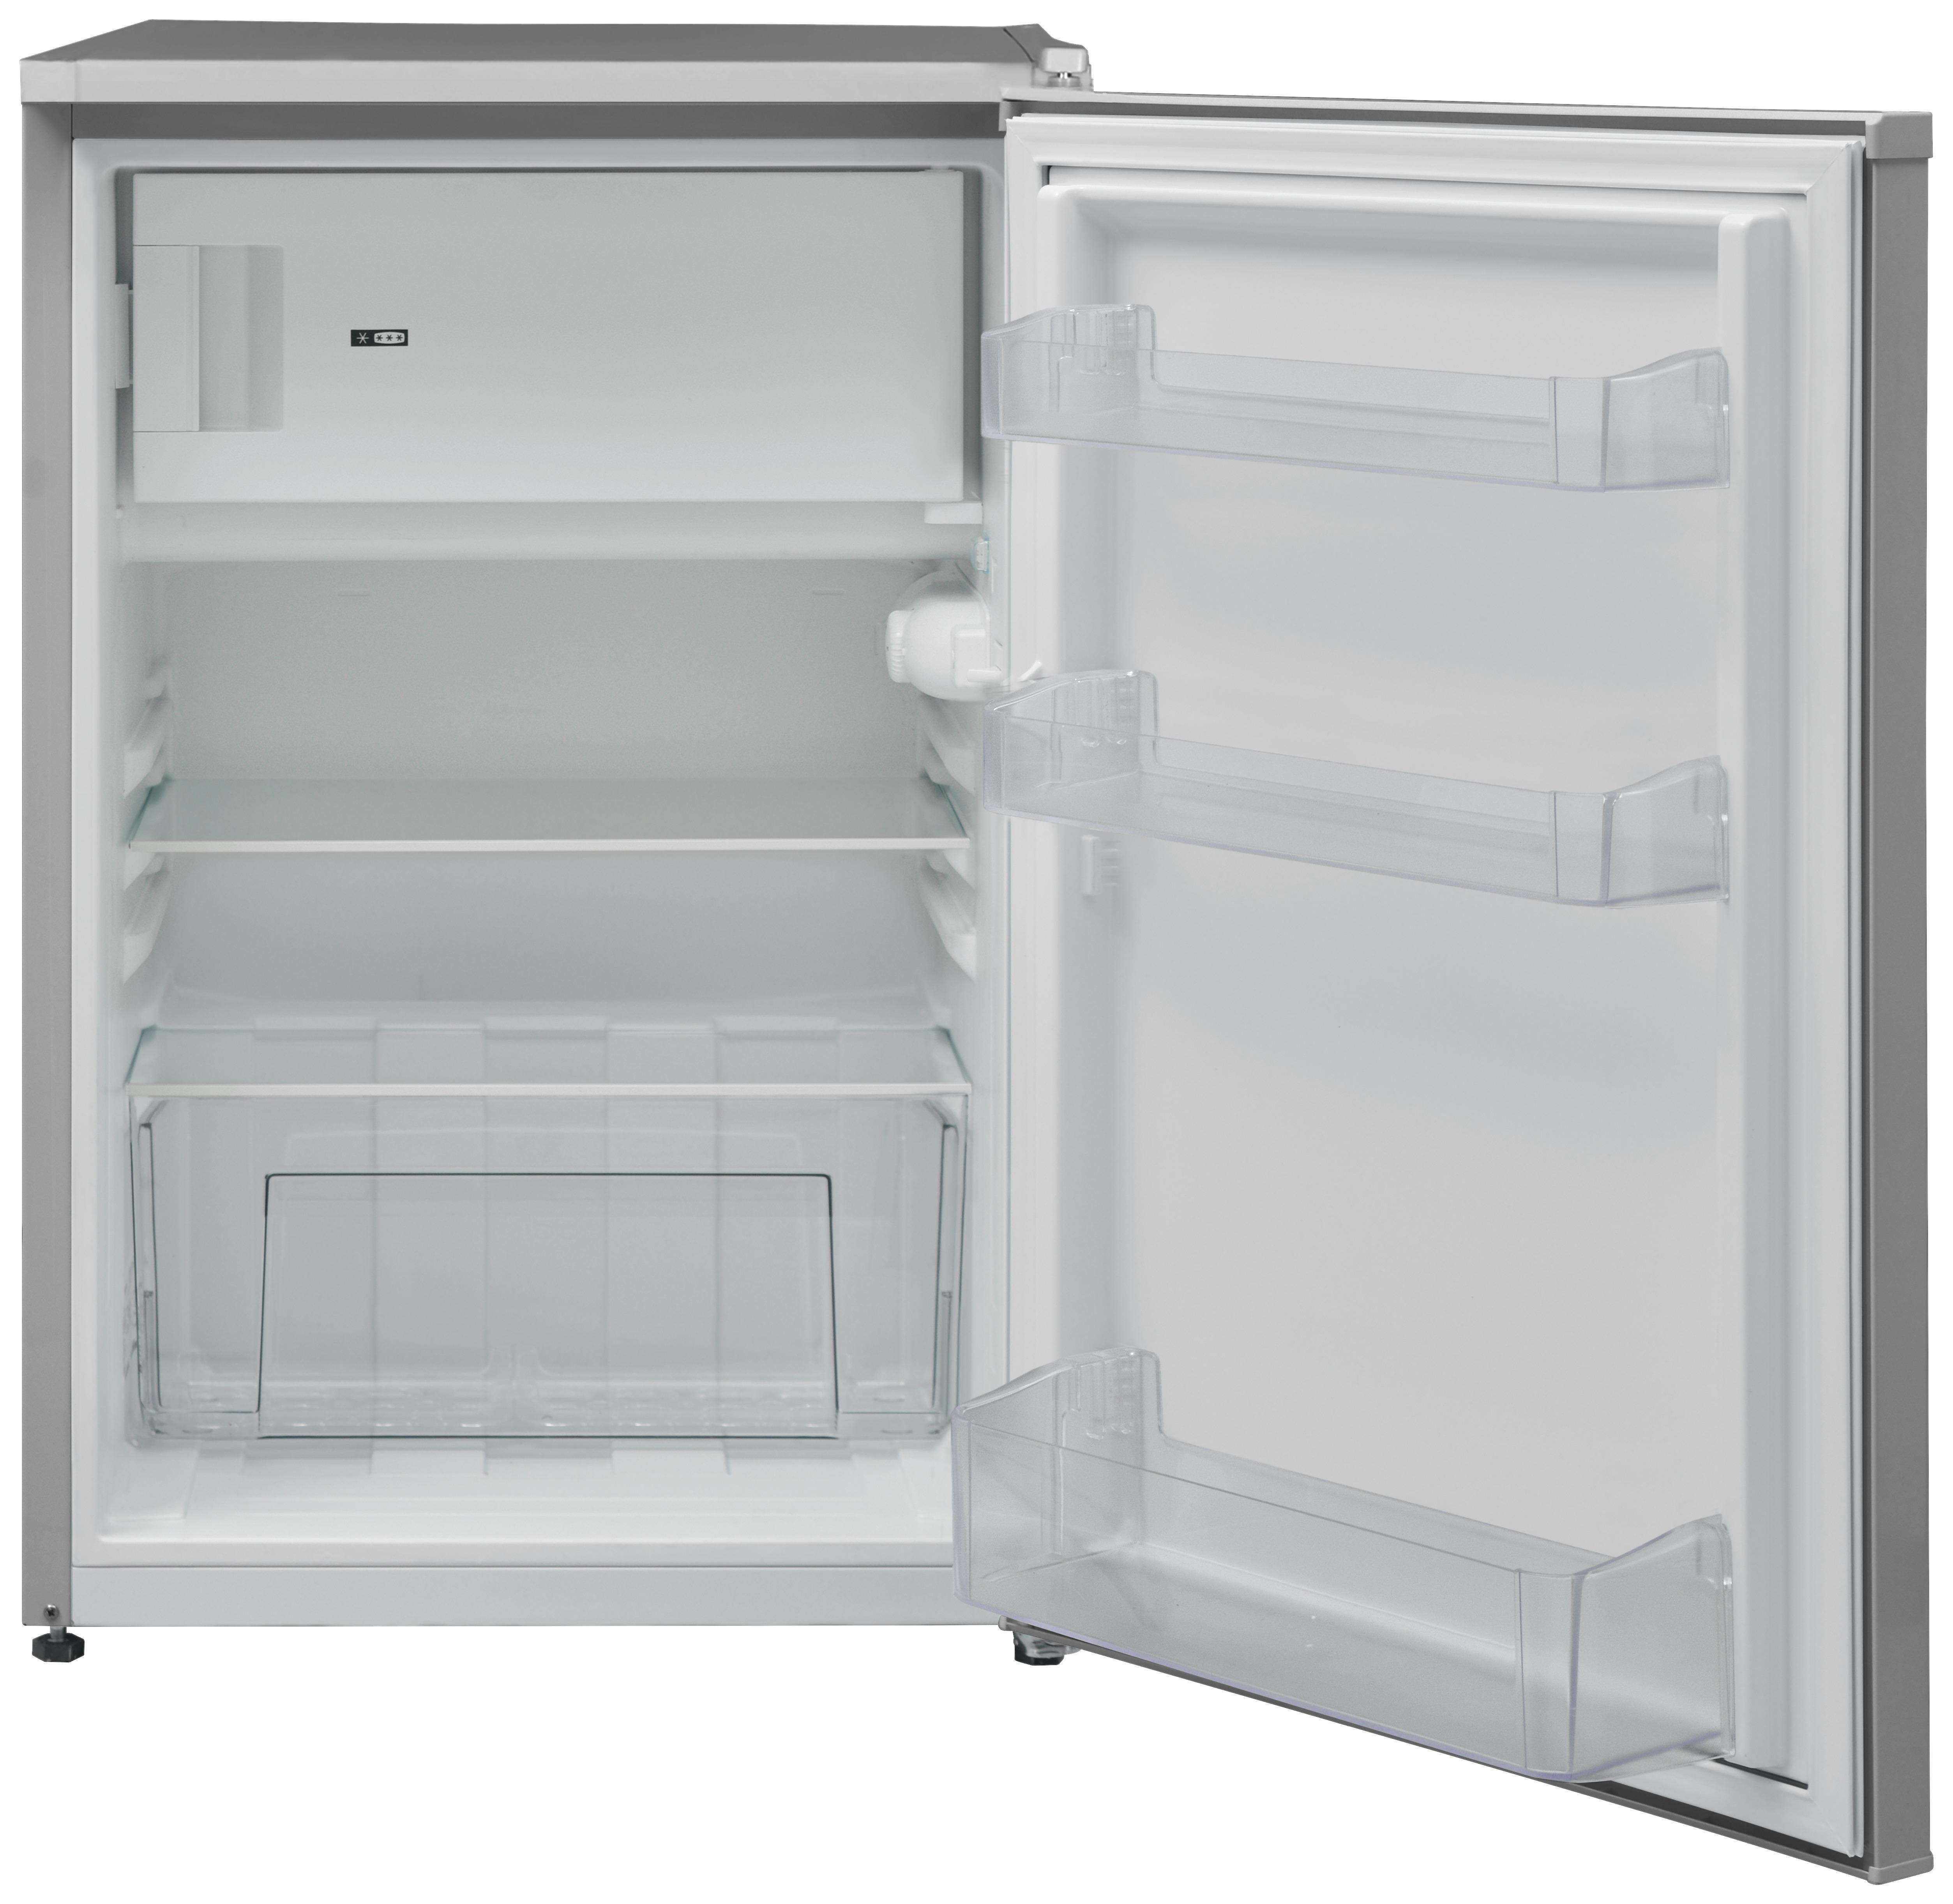 Kühlschränke günstig kaufen » Aktionen entdecken